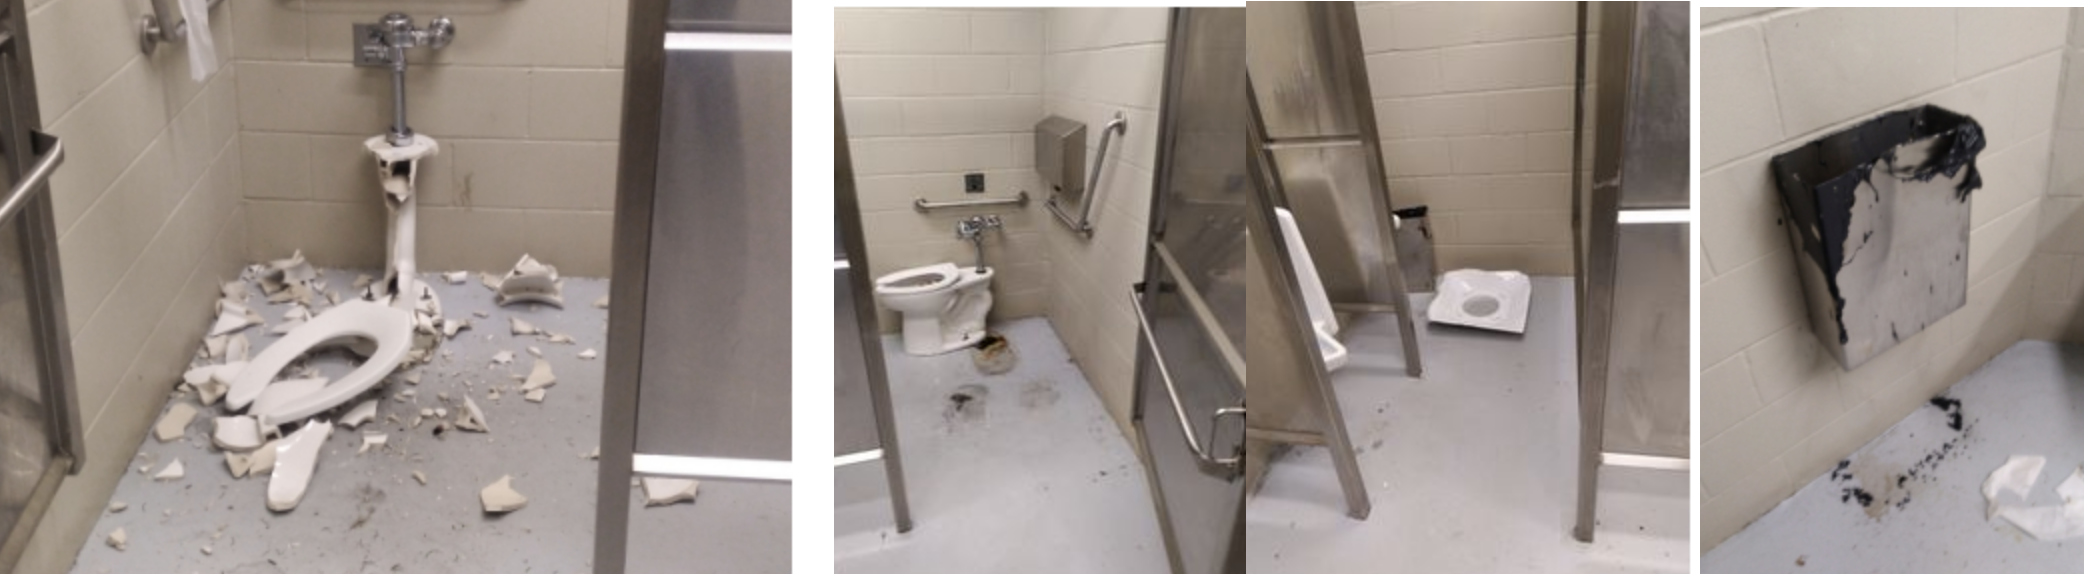 Surrey RCMP investigating vandalism to public washrooms